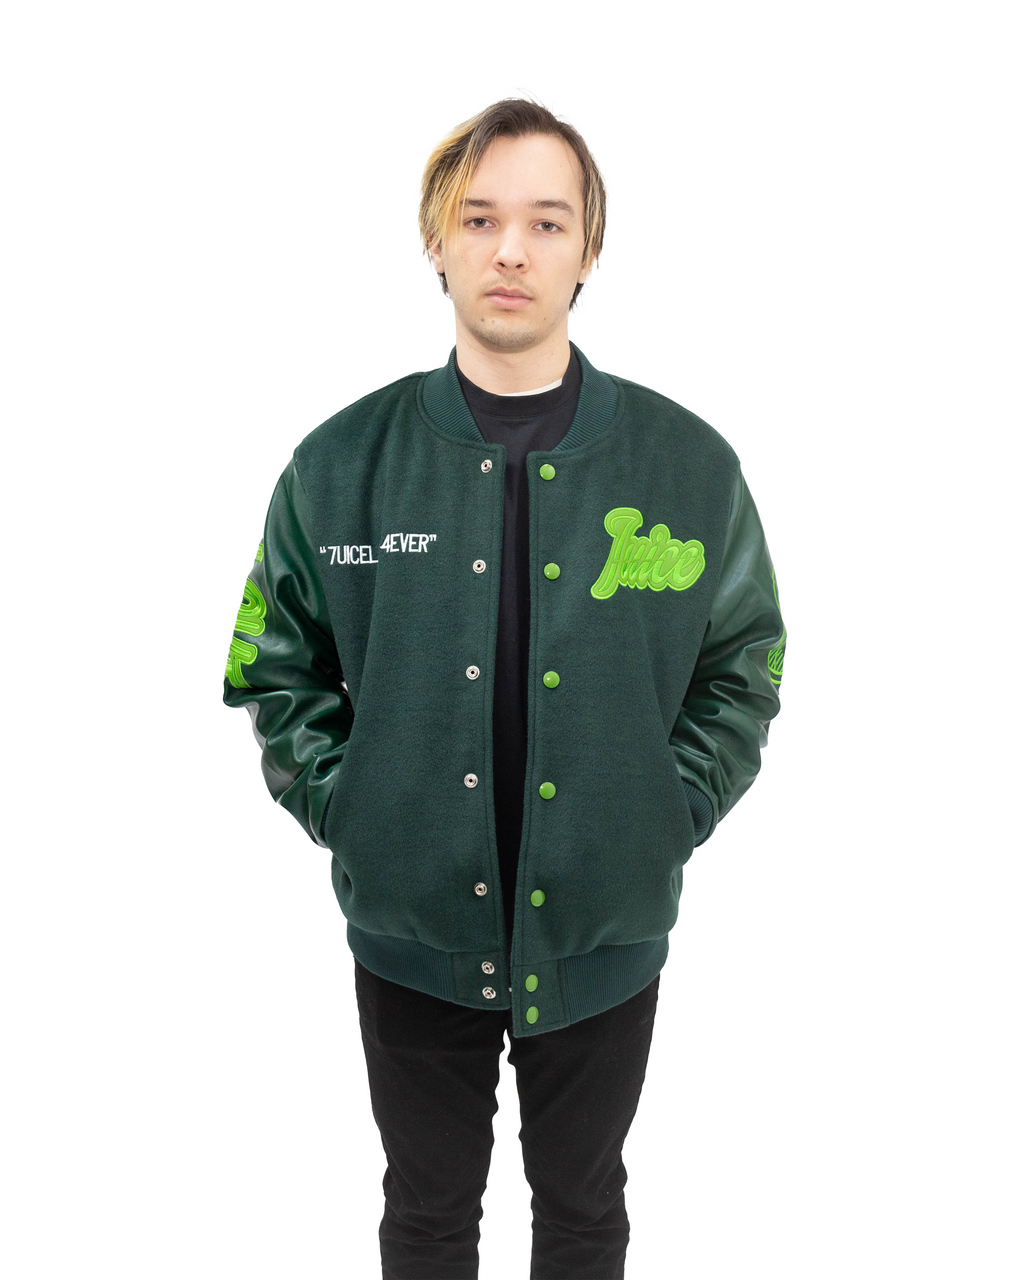 Green 7uice “Love” Varsity Jacket